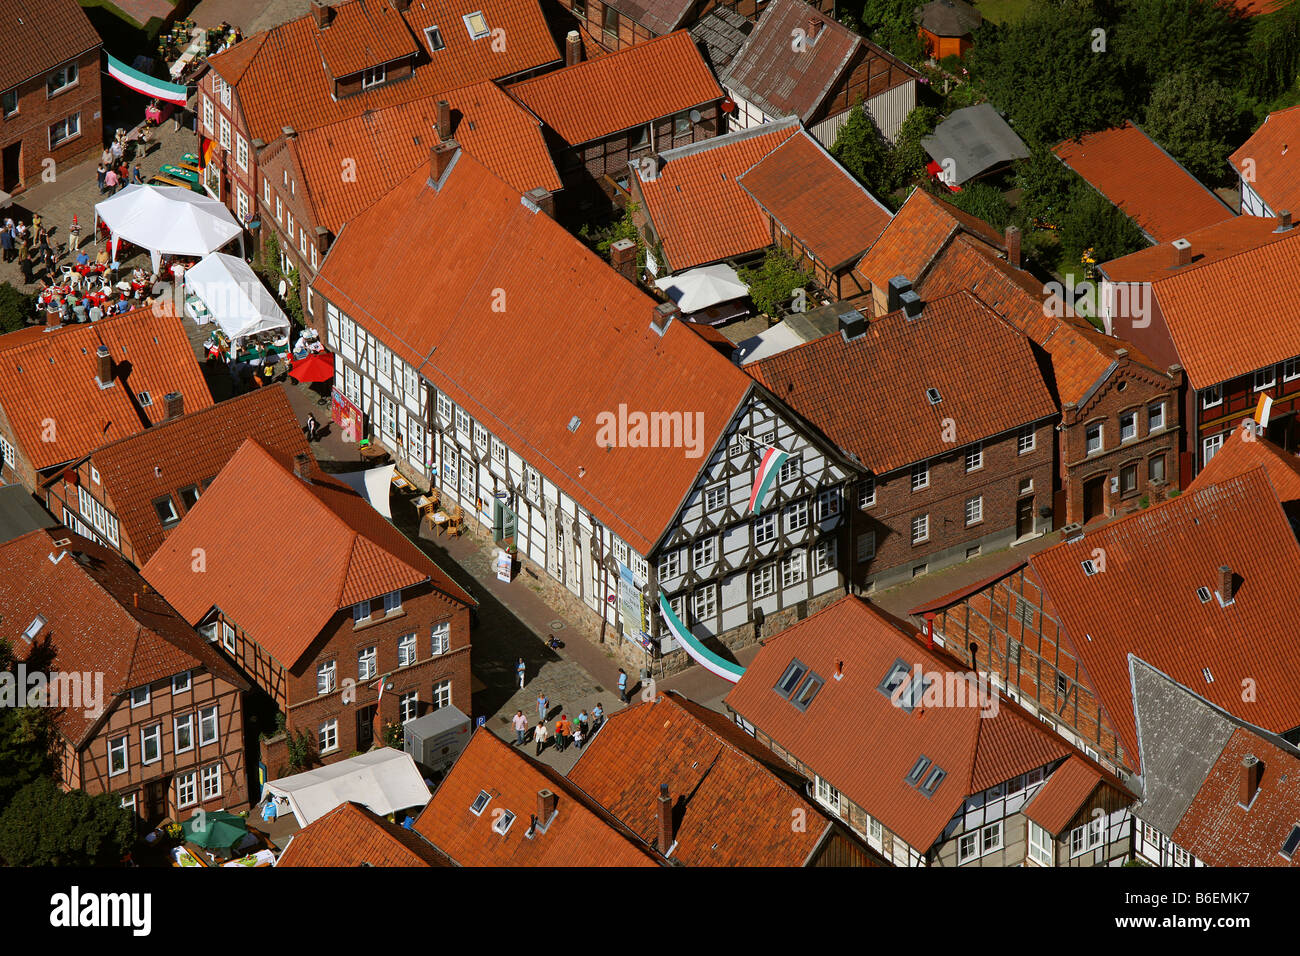 Vue aérienne, de la place du marché, maisons à colombages, le quartier historique, Hitzacker, Basse-Saxe, Allemagne, Europe Banque D'Images